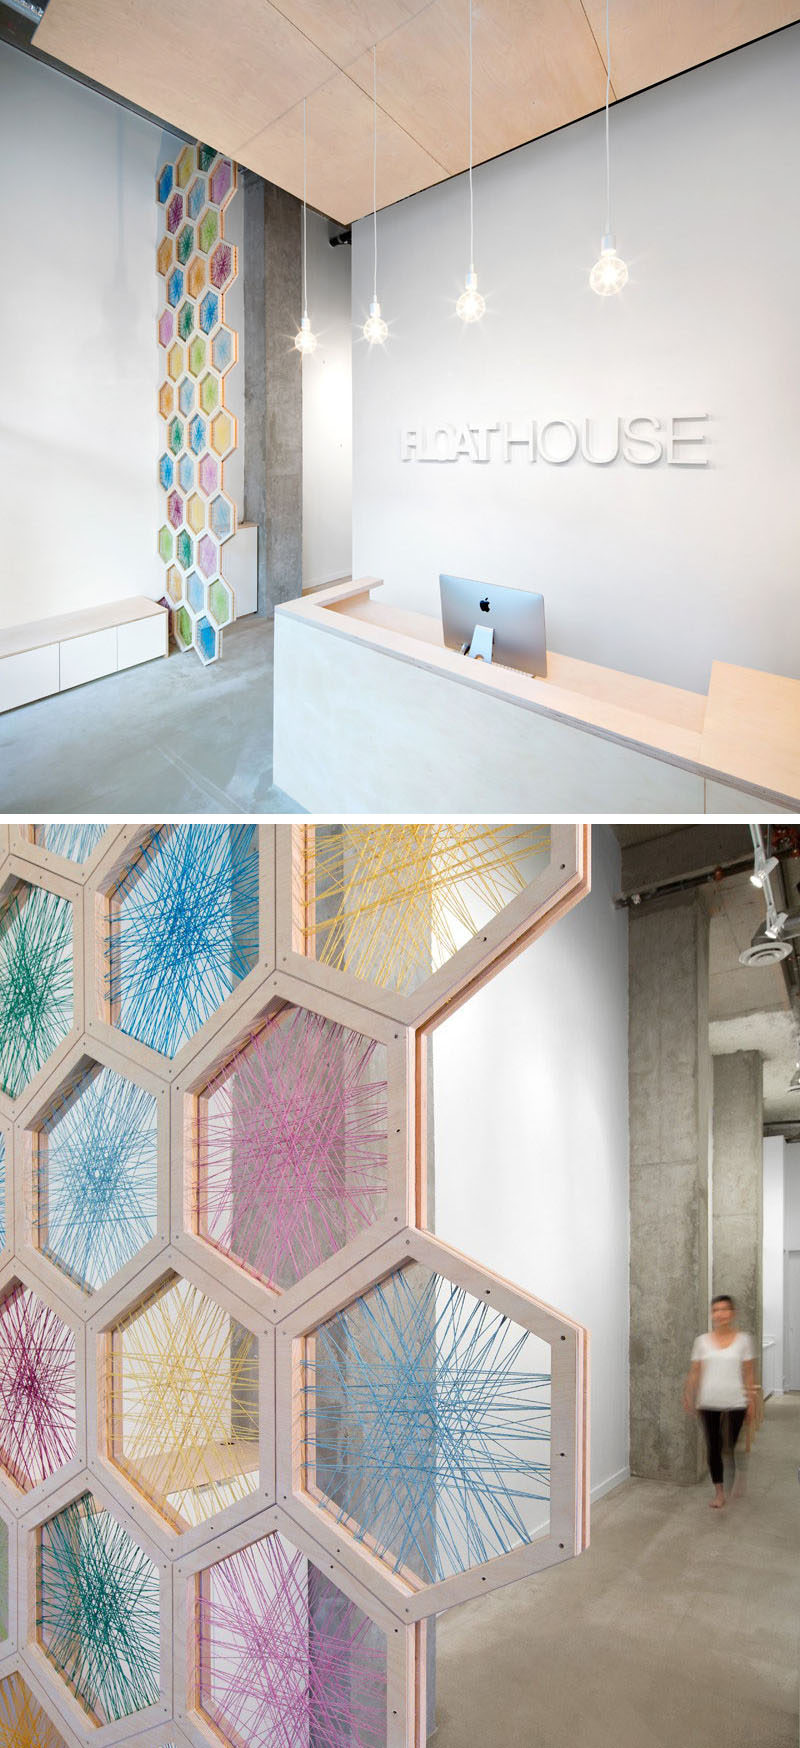 19 идей для использования шестиугольников в дизайне интерьеров и архитектуре // Экран высотой 17 футов, сделанный из шестиугольников березы, переплетенных разноцветным шпагатом, приветствует вас, когда вы входите в FloatHouse в Ванкувере.